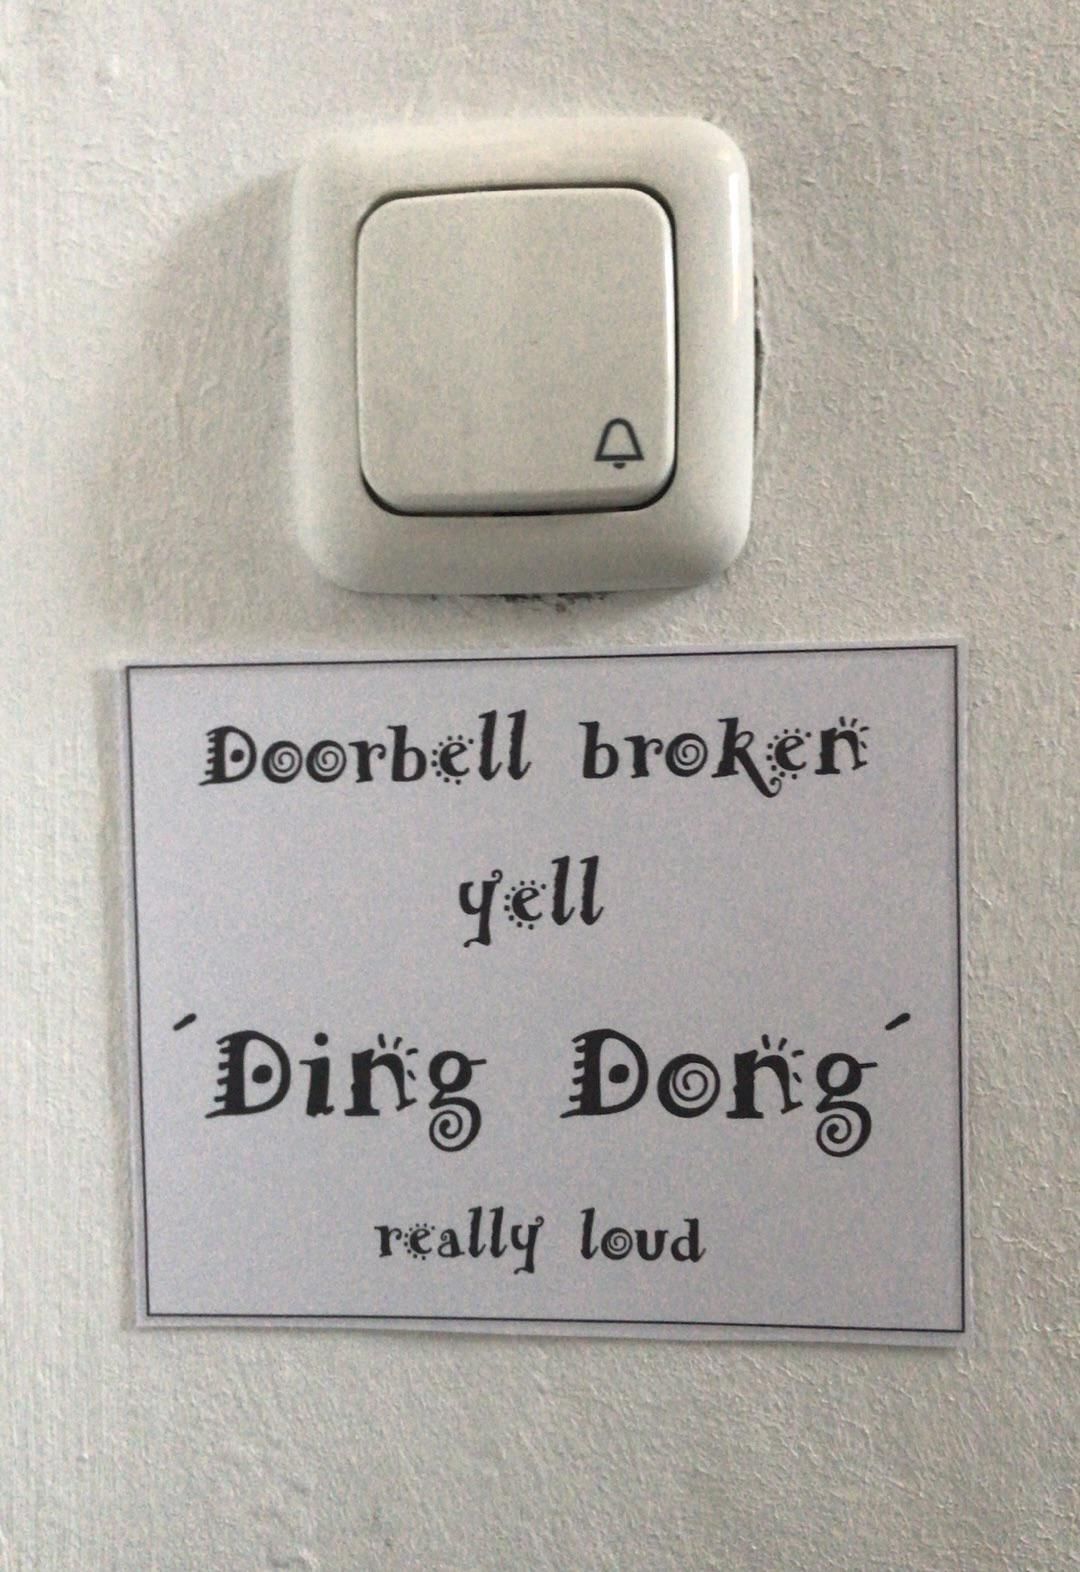 Broken doorbell at a neighbors place in Munich.